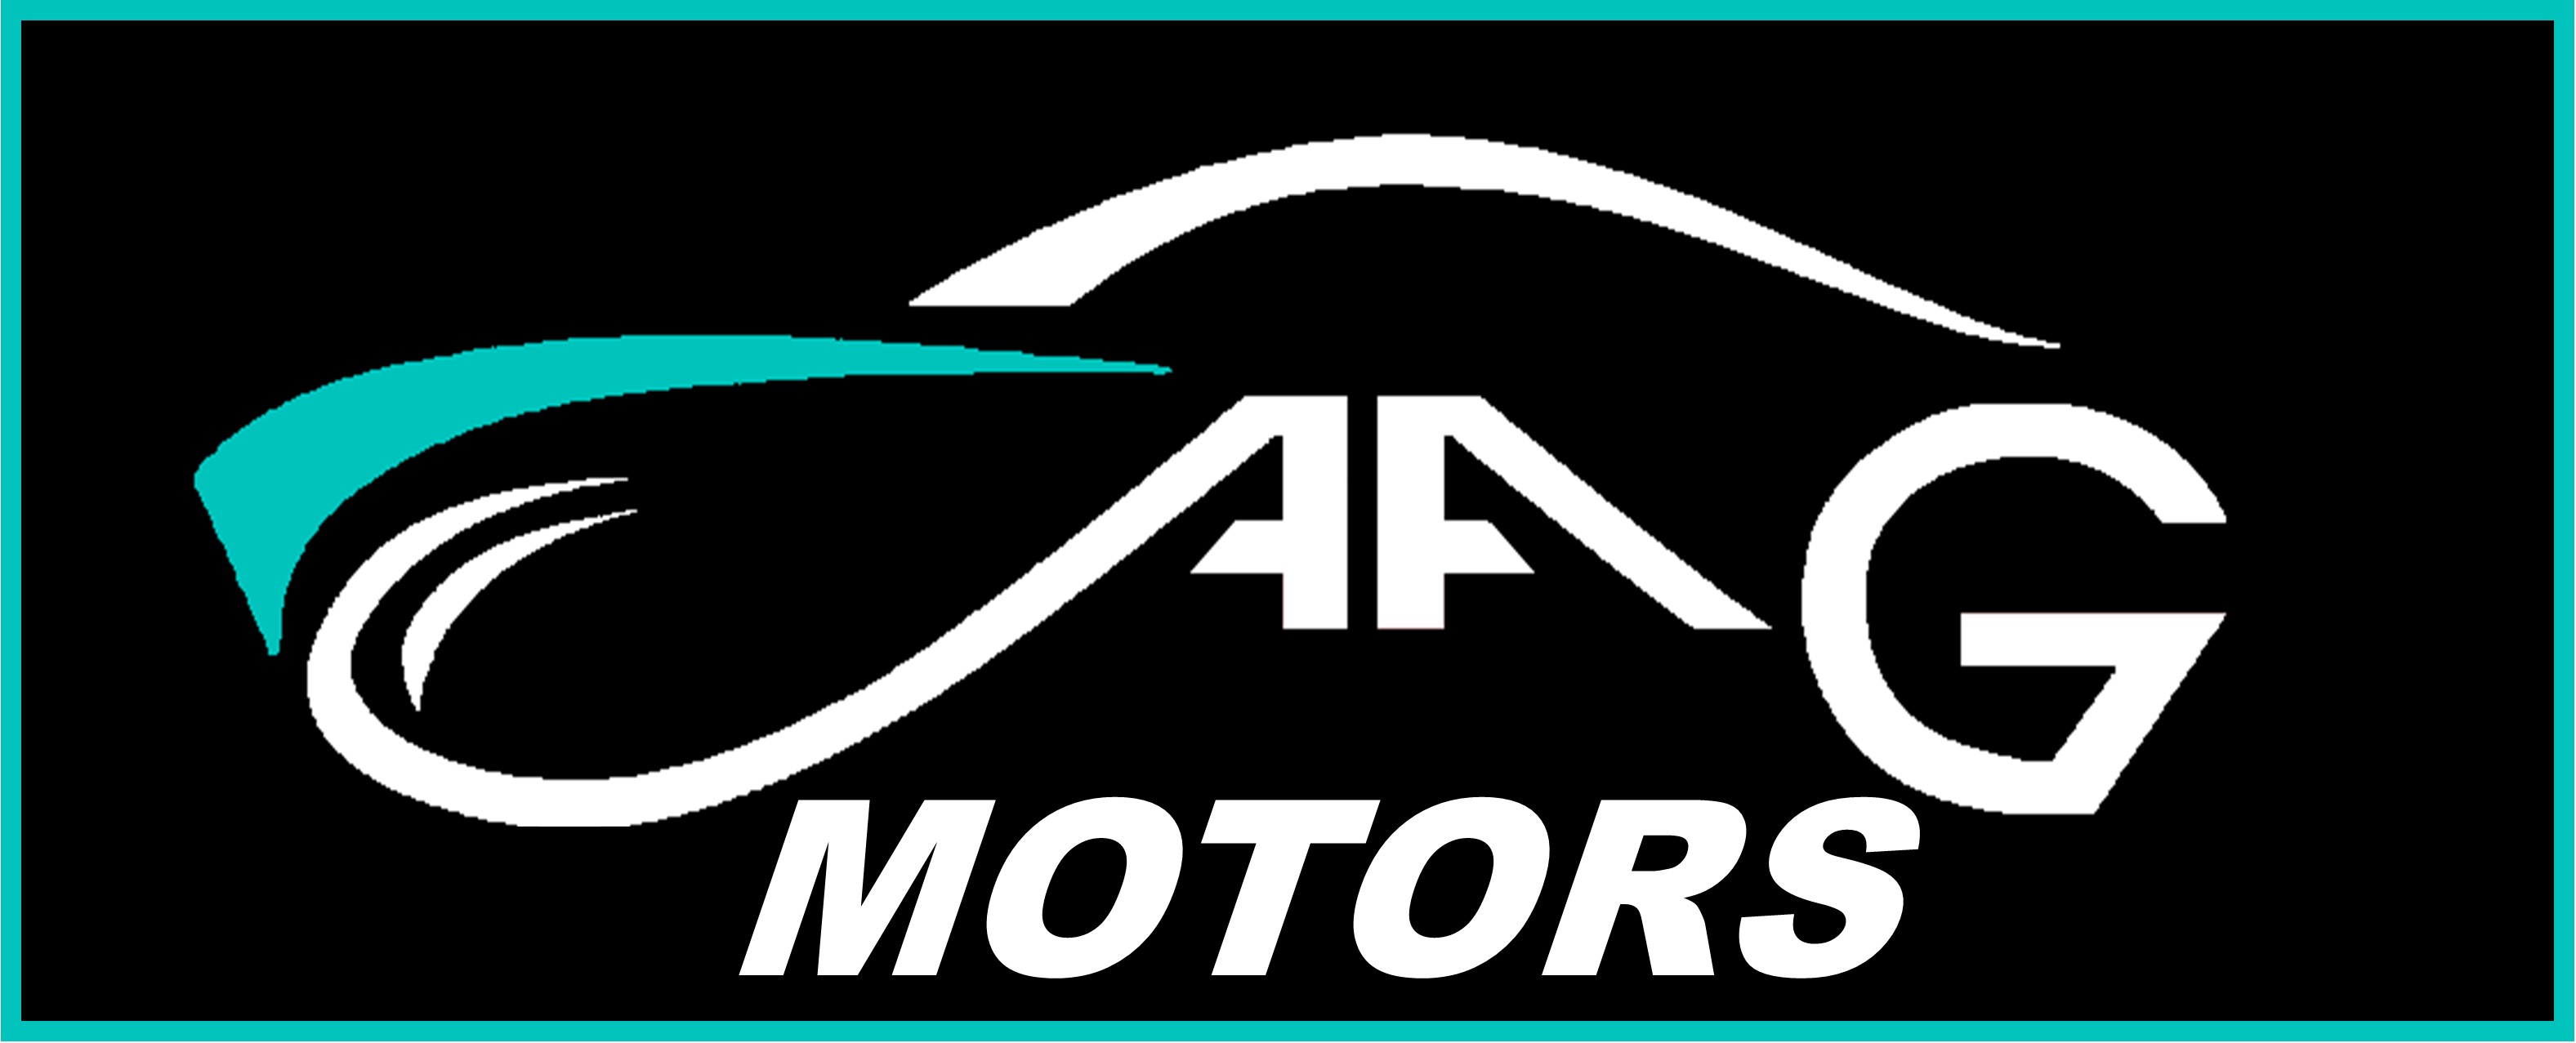 AAG Motors - a commercial truck dealer on AgriMag Marketplace